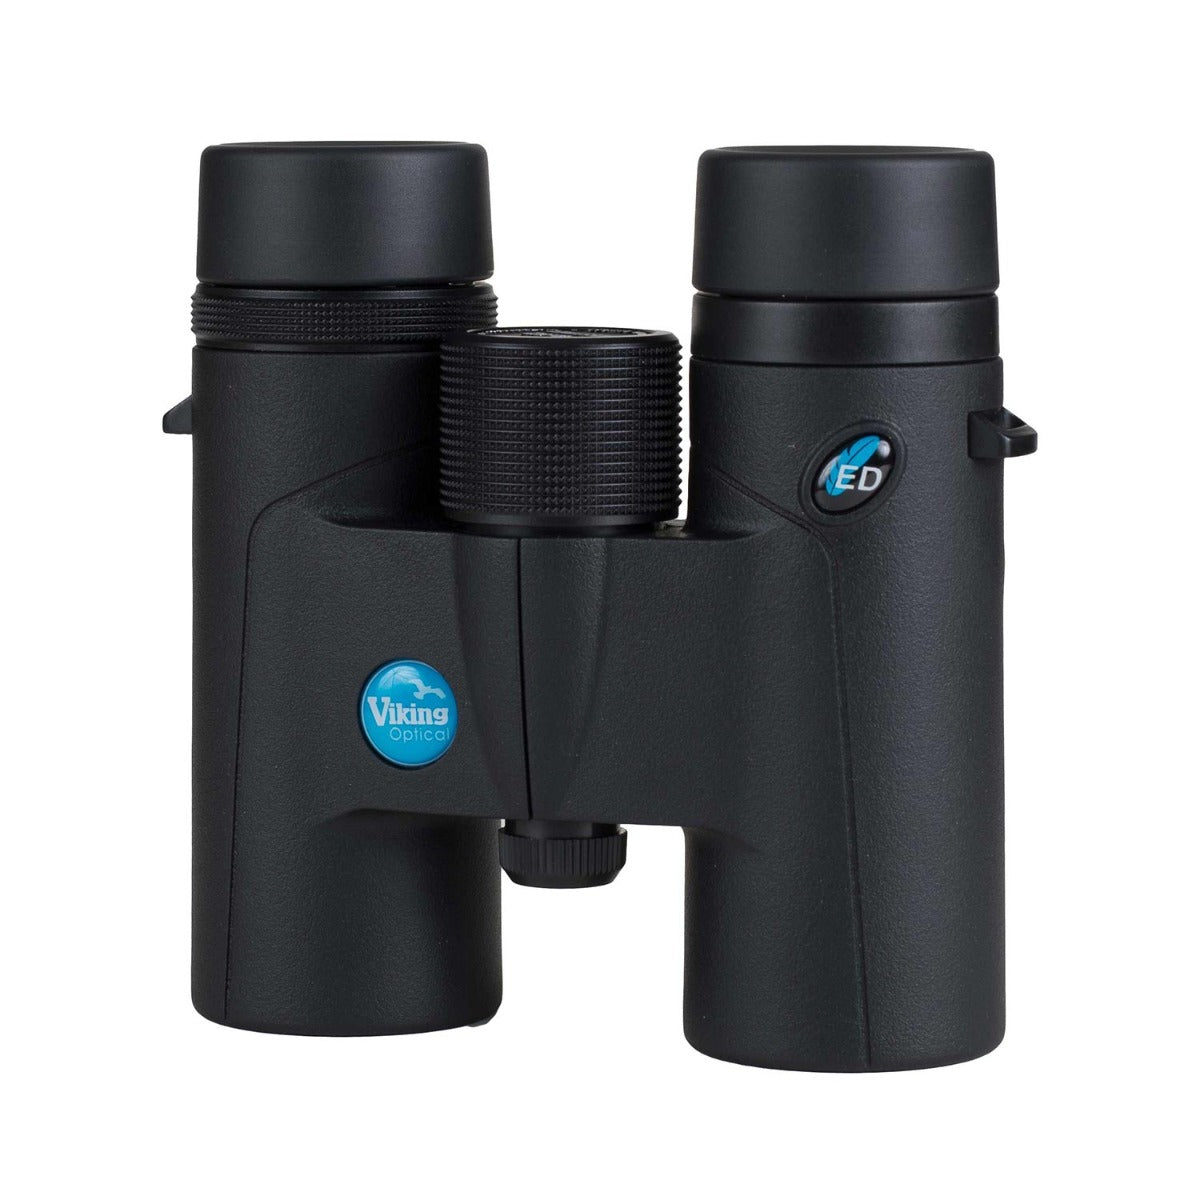 Side view of binoculars